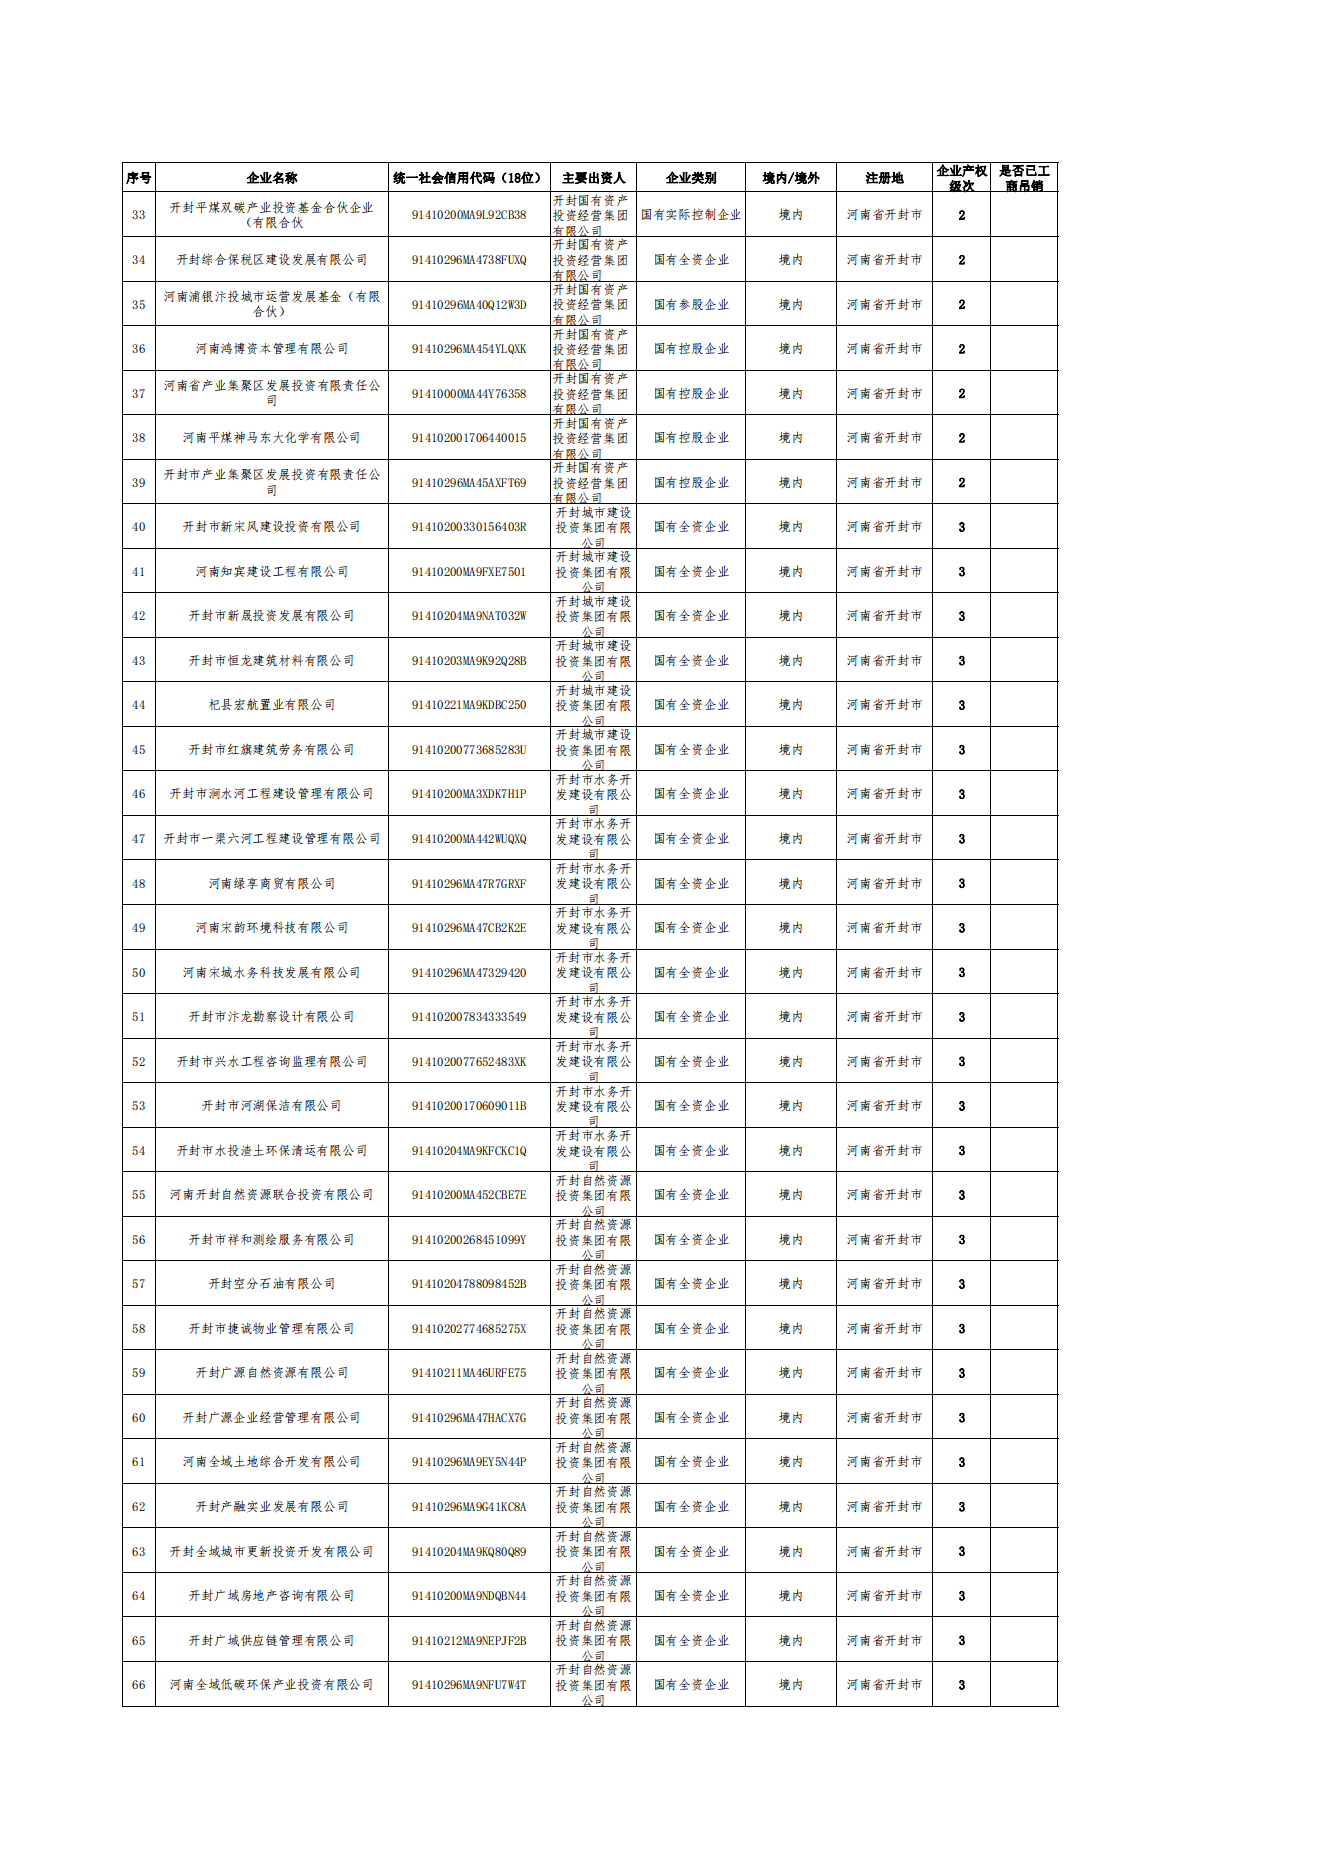 公告-全級次企業名單(1)_01.png